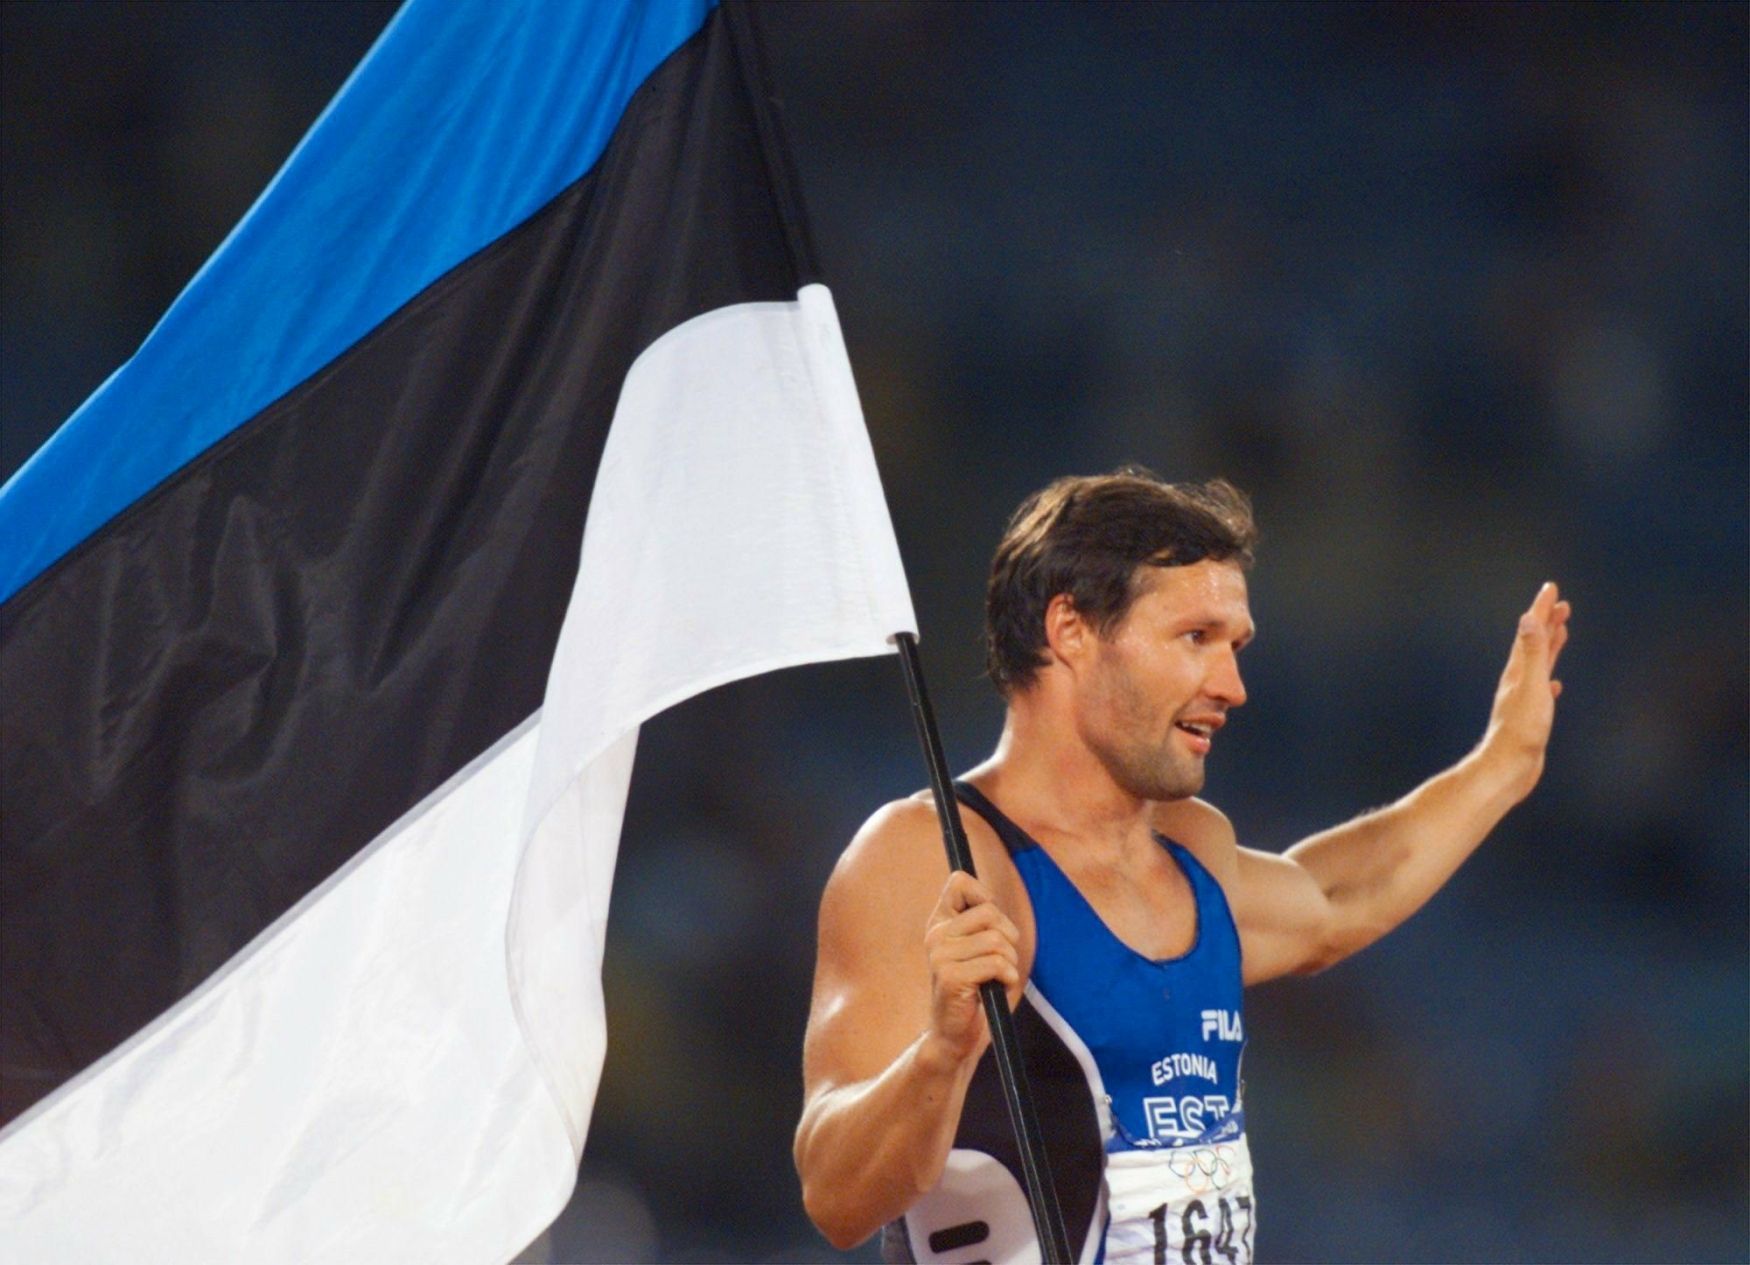 Estonský desetibojař Erki Nool na olympiádě 2000 v Sydney